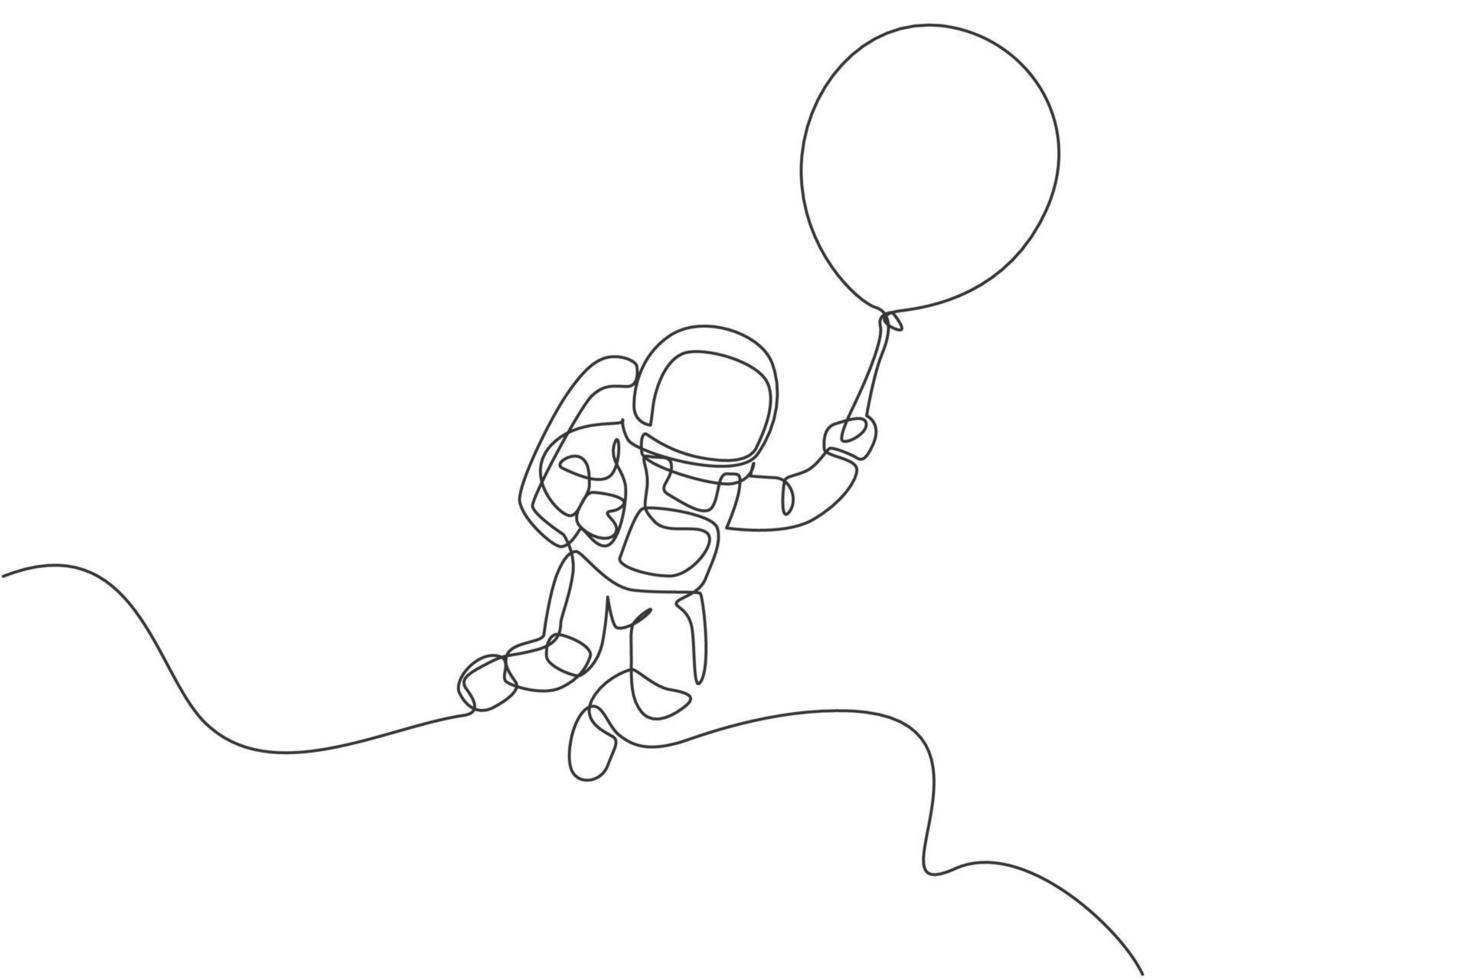 Eine einzige Strichzeichnung des Weltraummann-Astronauten, der die kosmische Galaxie erforscht und mit Ballonvektorgrafik-Illustration fliegt. Fantasy-Weltraum-Life-Fiction-Konzept. modernes Design mit durchgehender Linienführung vektor